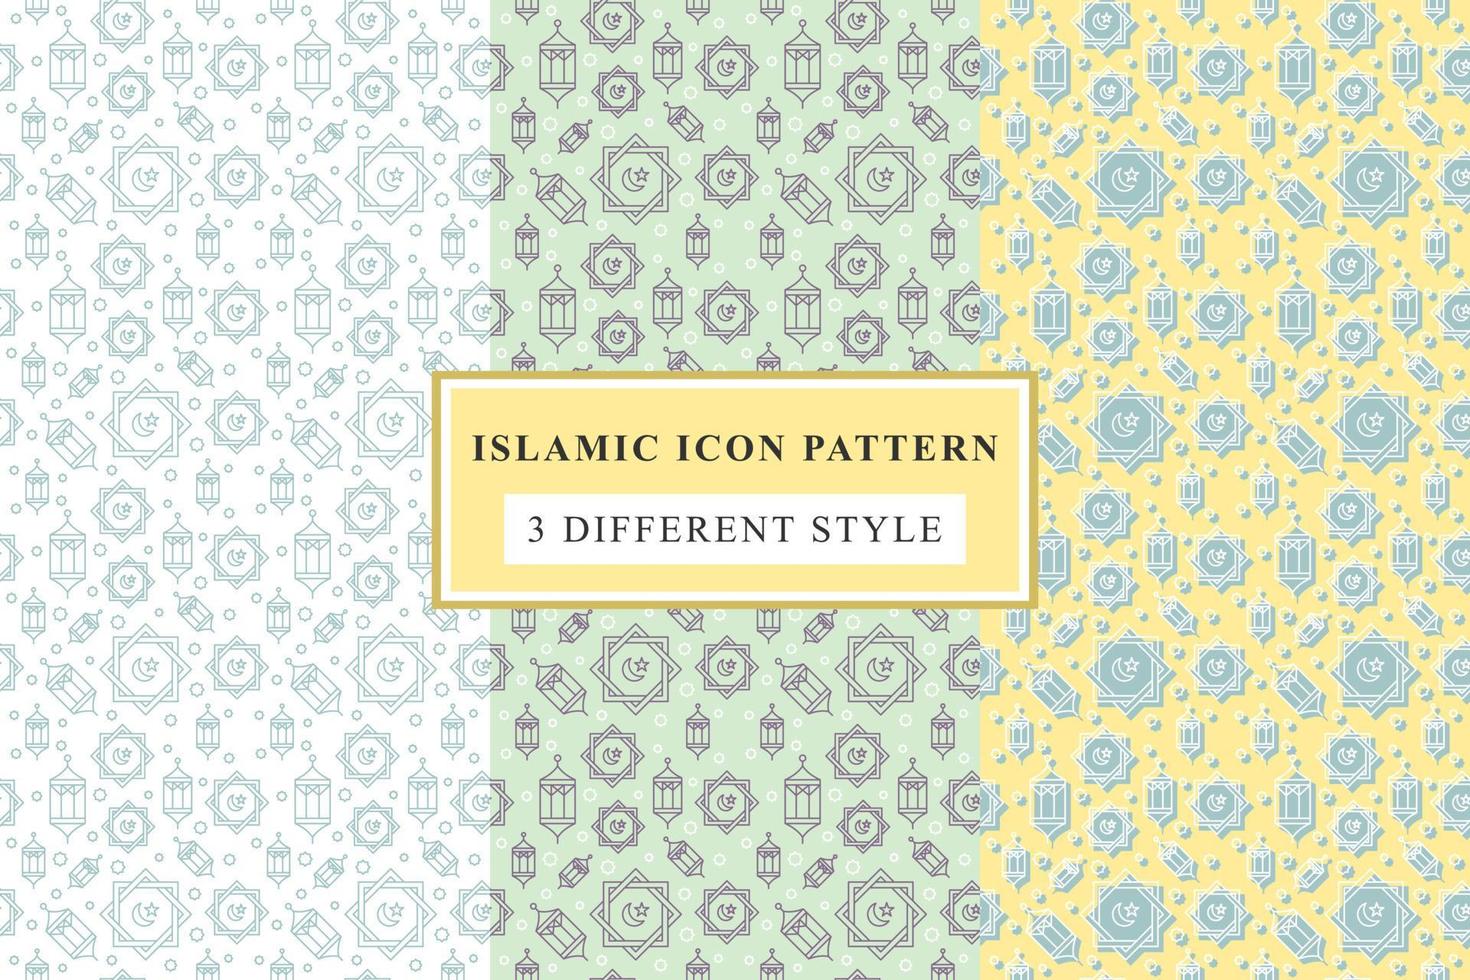 ícones de linha fina de padrão islâmico no design do ramadã de fundo branco vetor